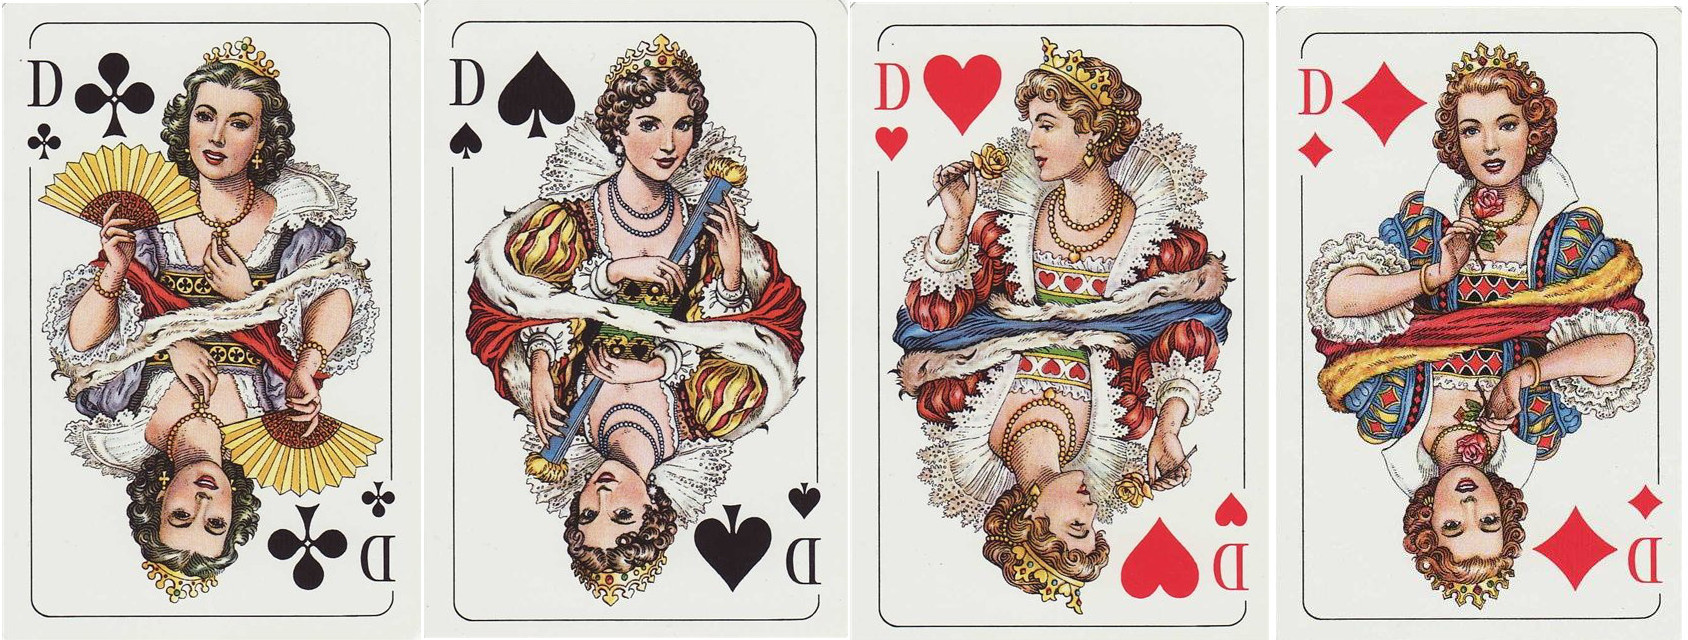 4 дамы из колоды карт